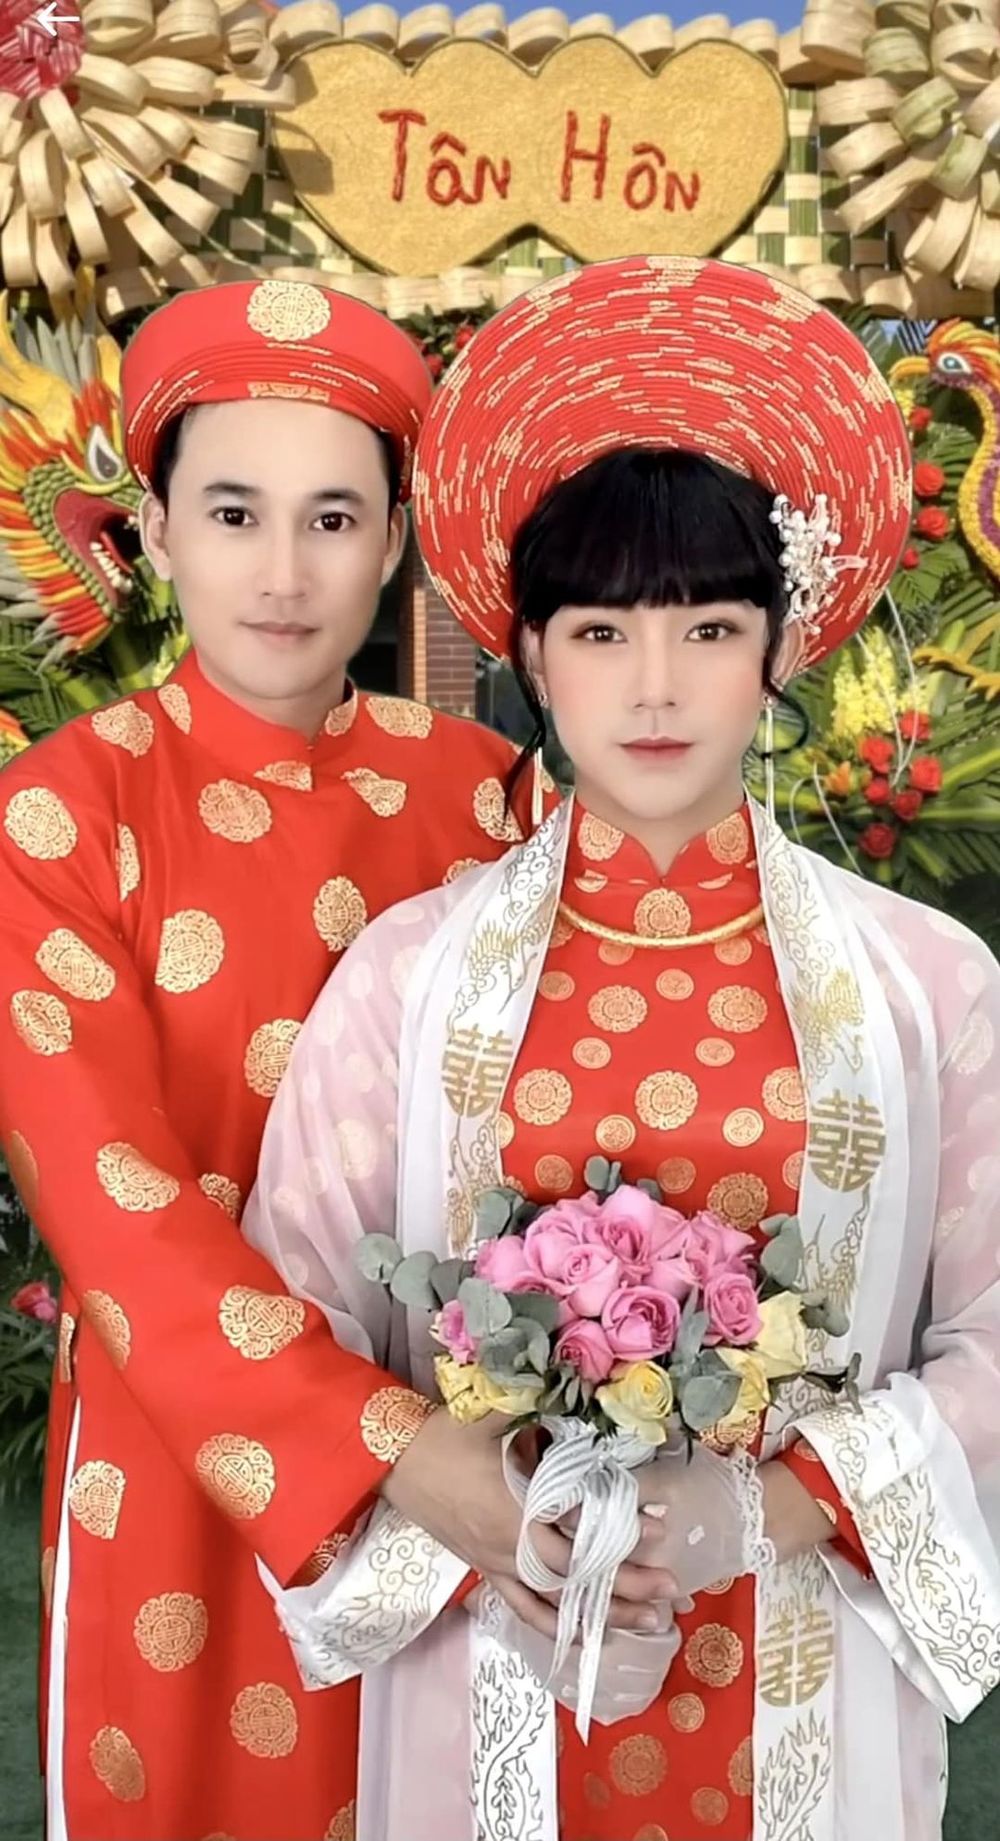 Diễn viên Hà Trí Quang làm lễ tân hôn online với bạn trai - 1